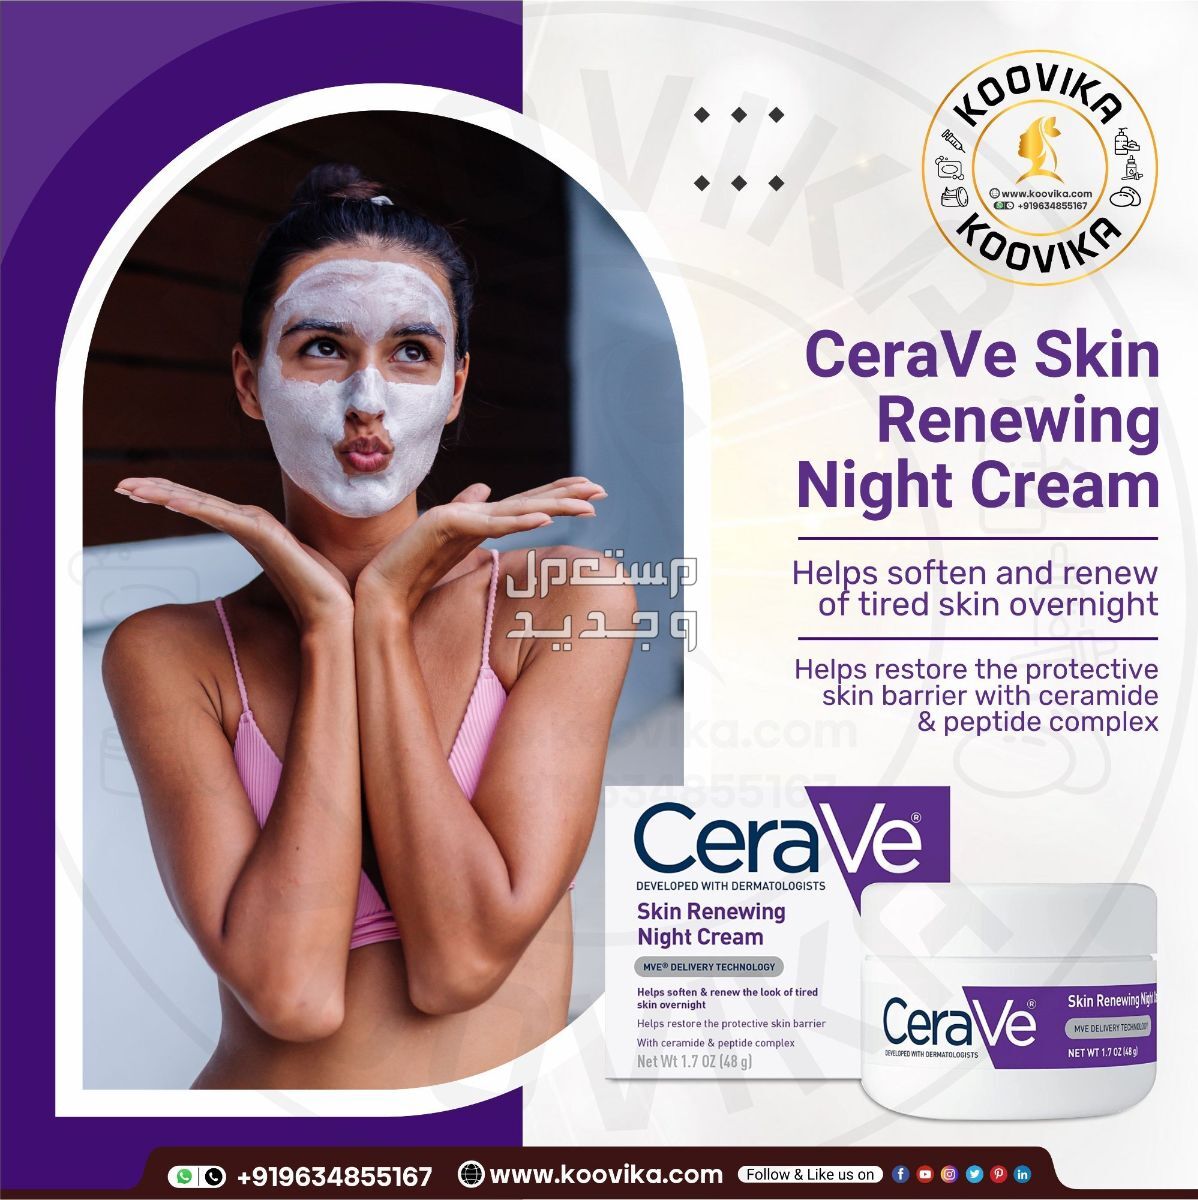 أفضل كريم ليلي للعناية بالبشرة لعام 2023 في سوريا شكل كريم ليلي من CeraVe Skin Renewing Night Cream على البشرة